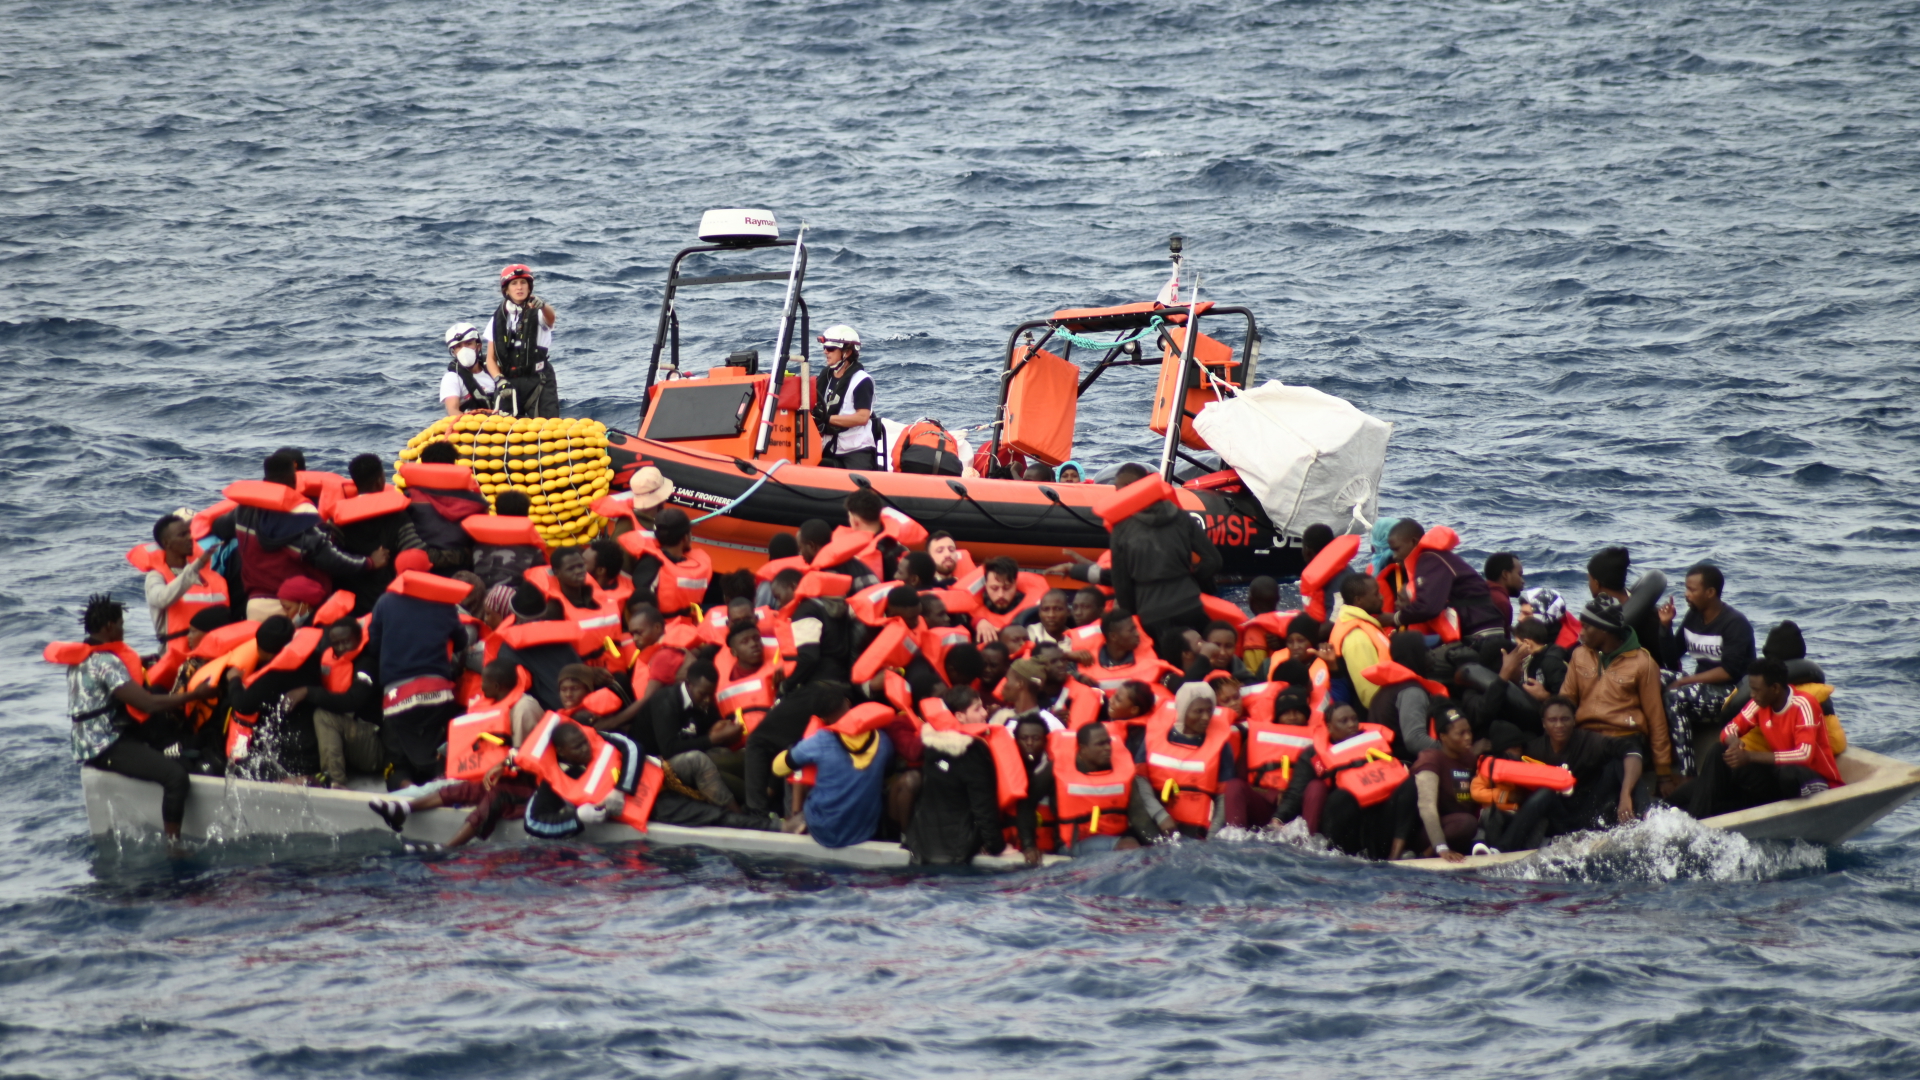  Ein Rettungsboot schwimmt hinter einem mit Migranten besetzten Boot im Mittelmeer.  | dpa